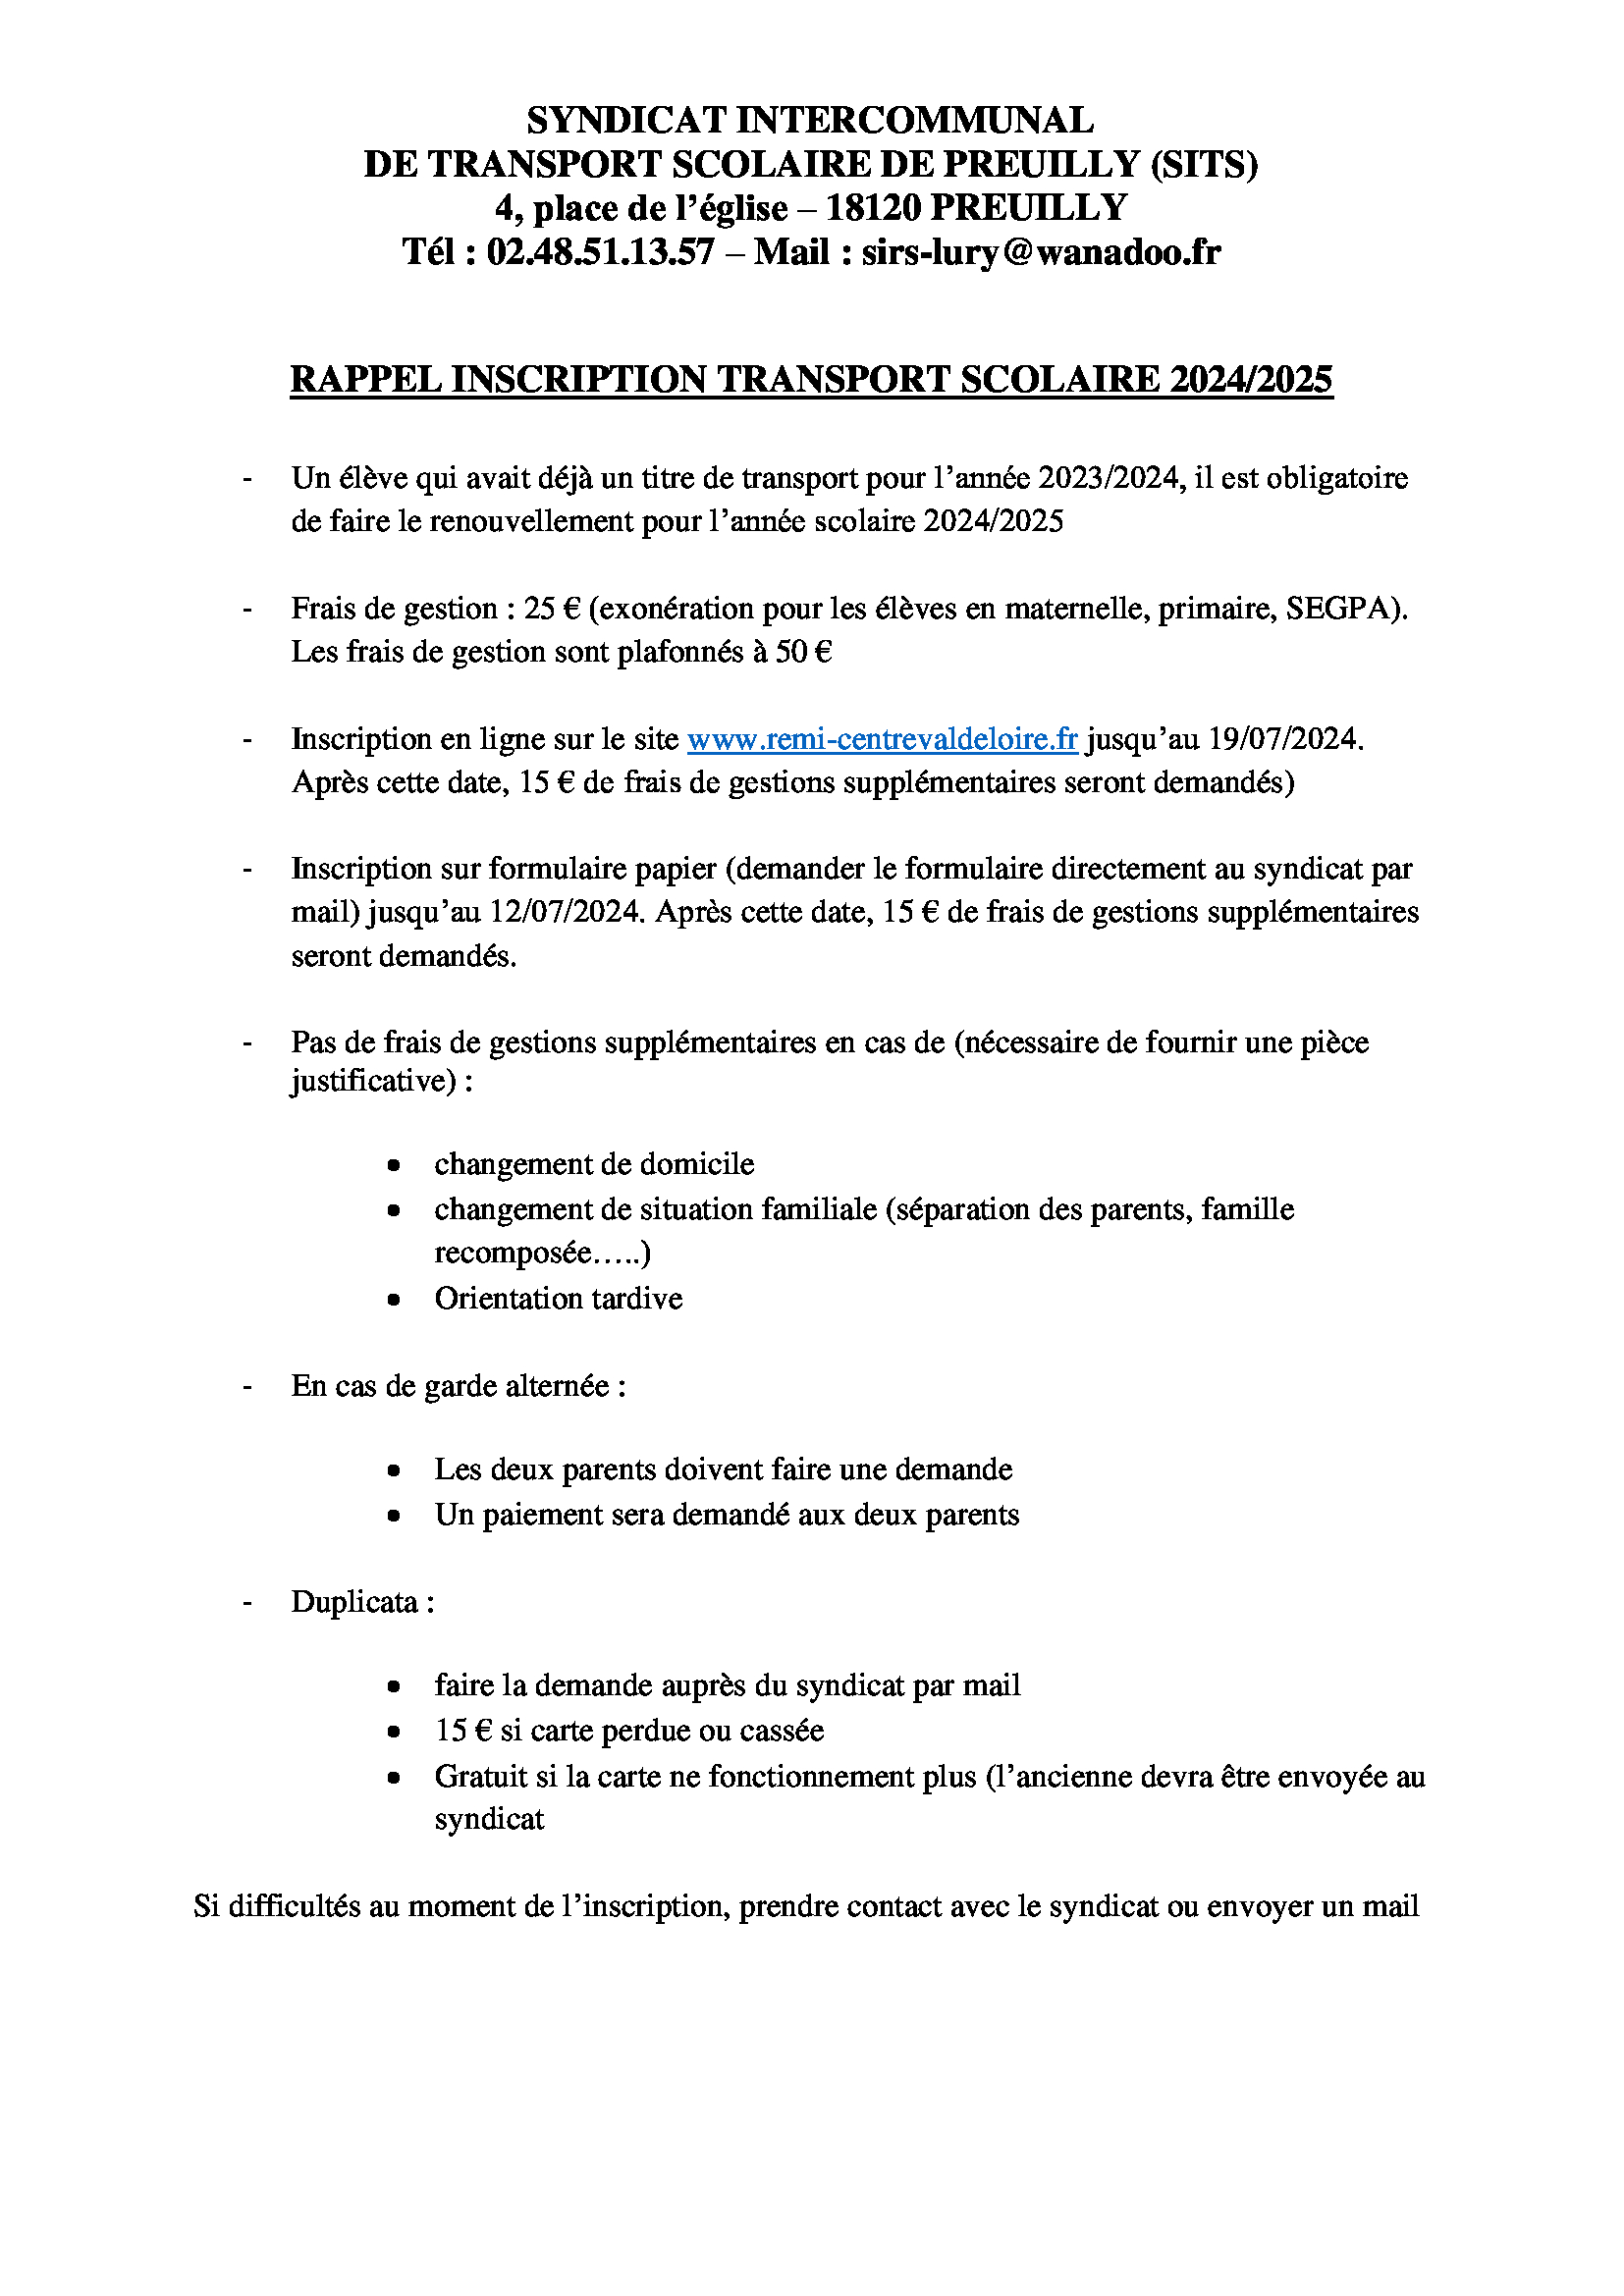 RAPPEL INSCRIPTION TRANSPORT SCOLAIRE 2024